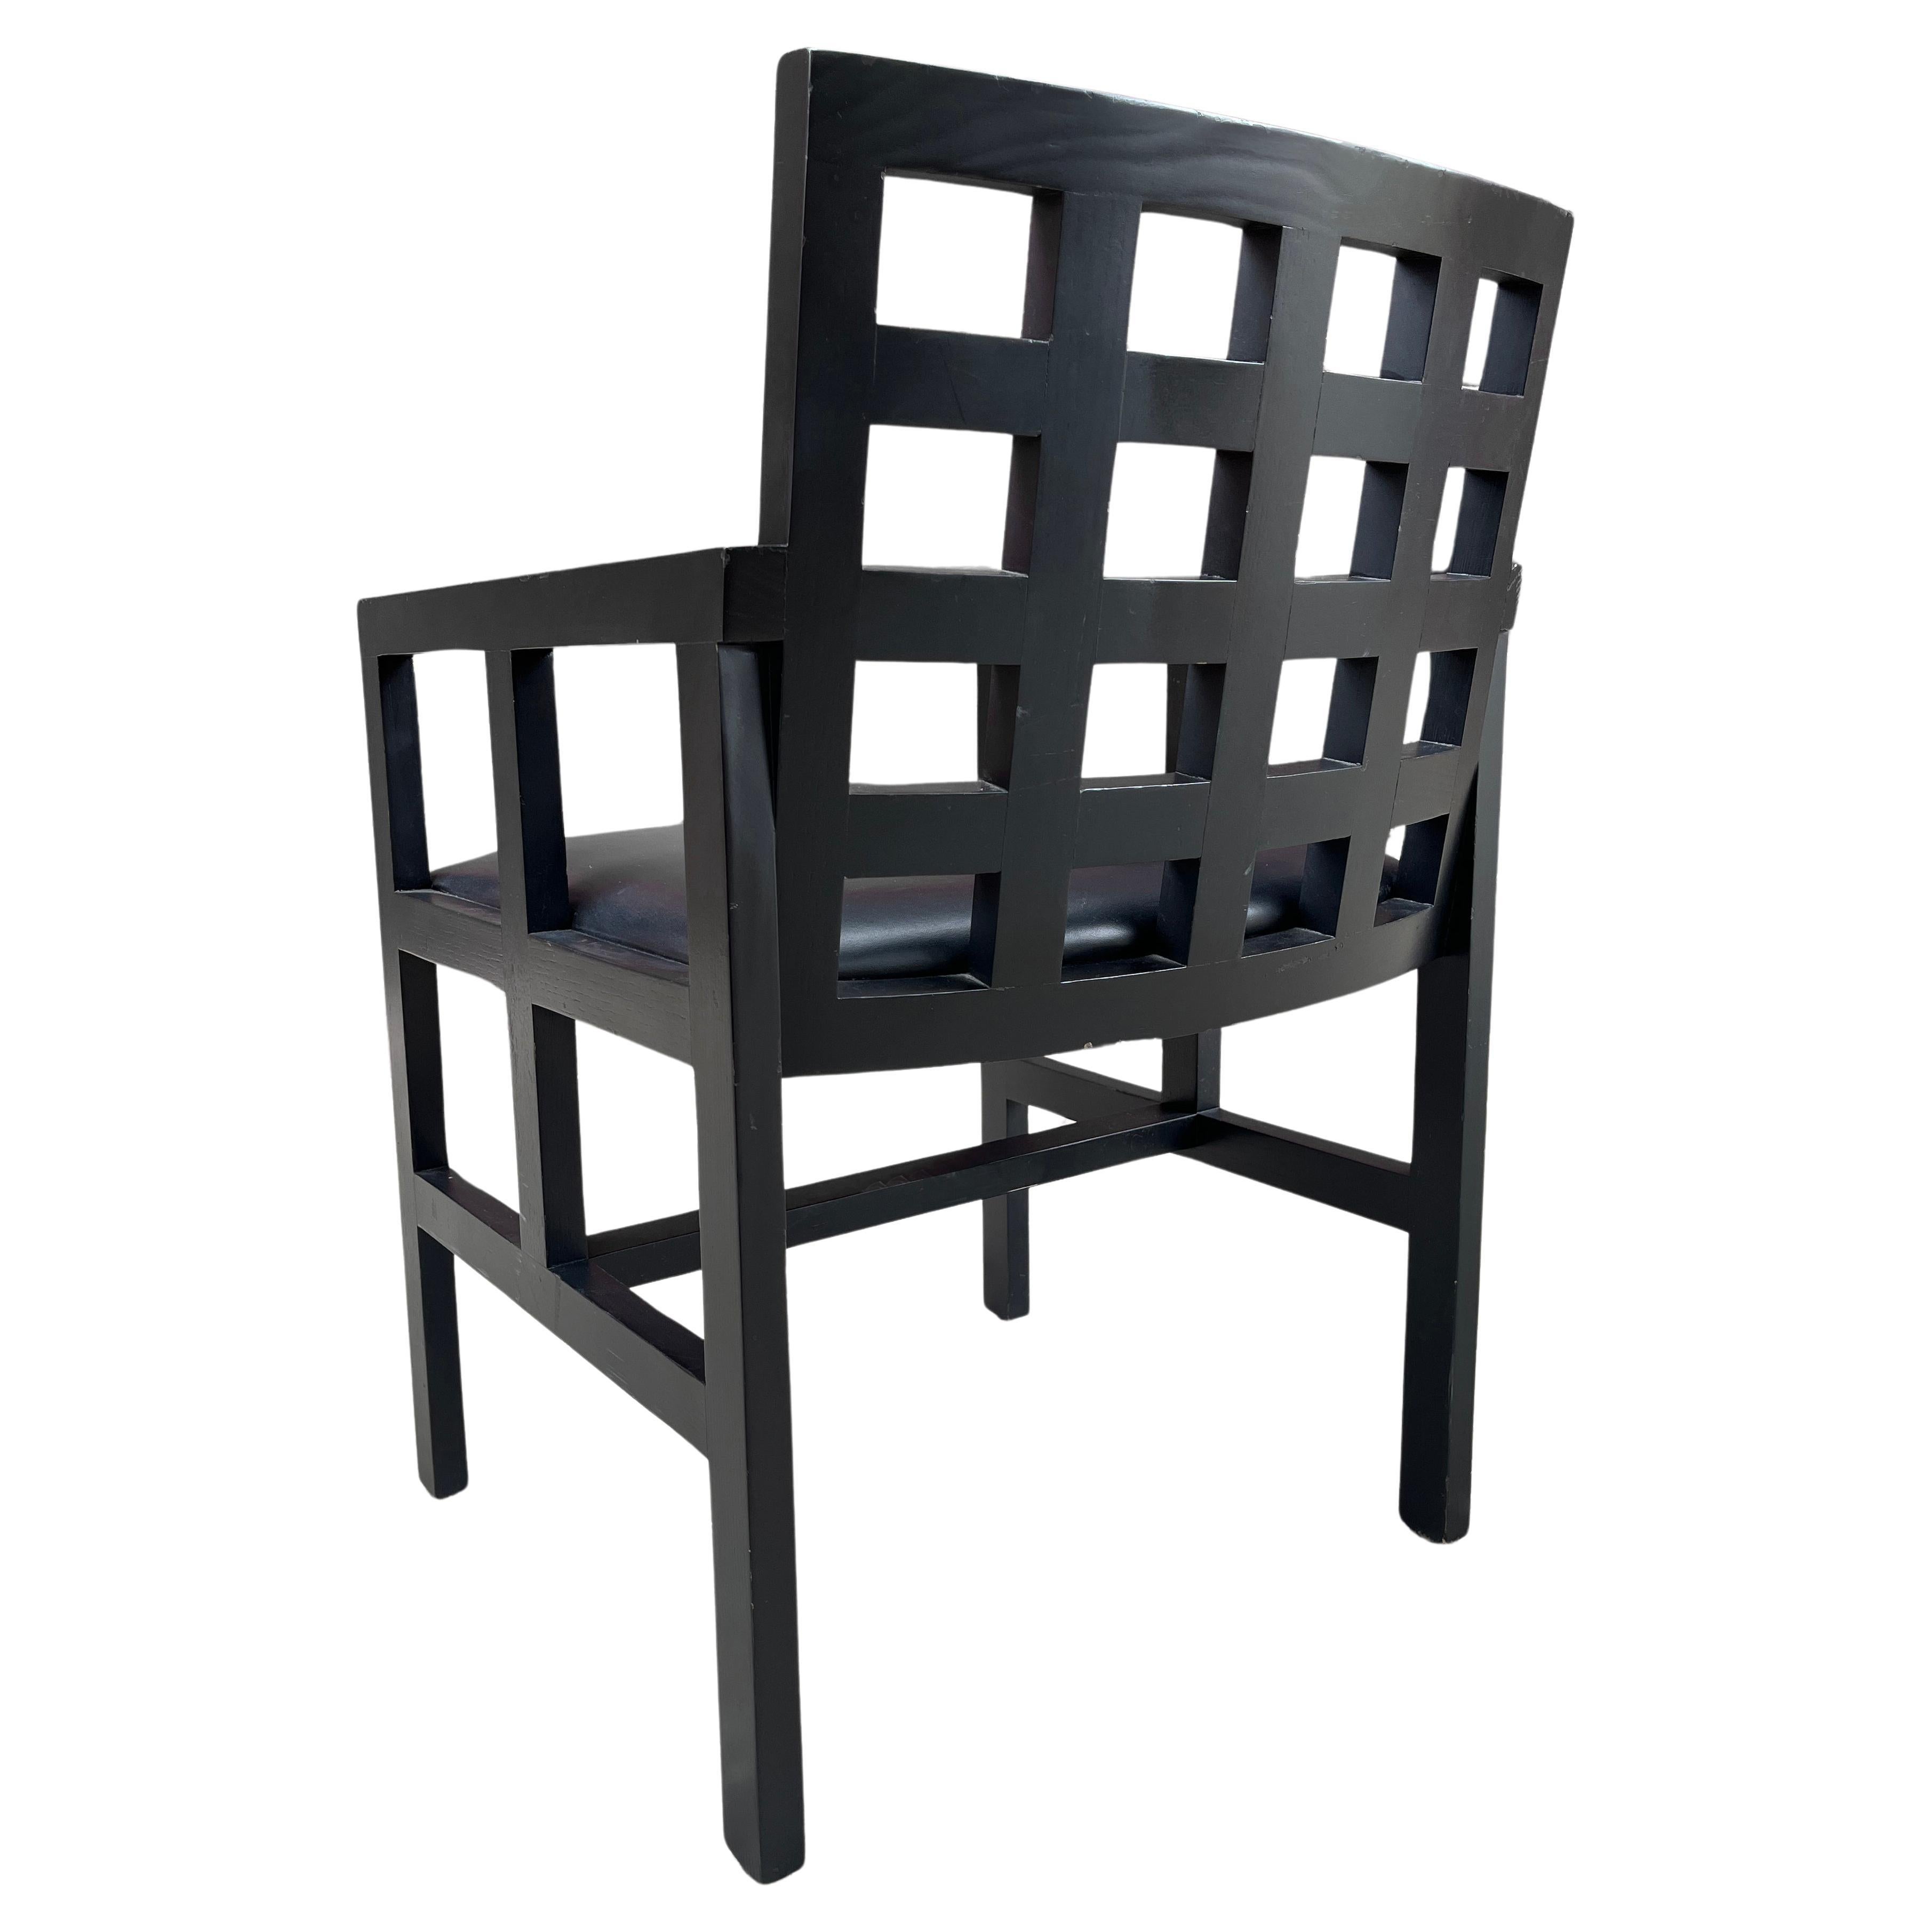 Midcentury Modern Ward Bennett Model 1515 Chair For Sale 1